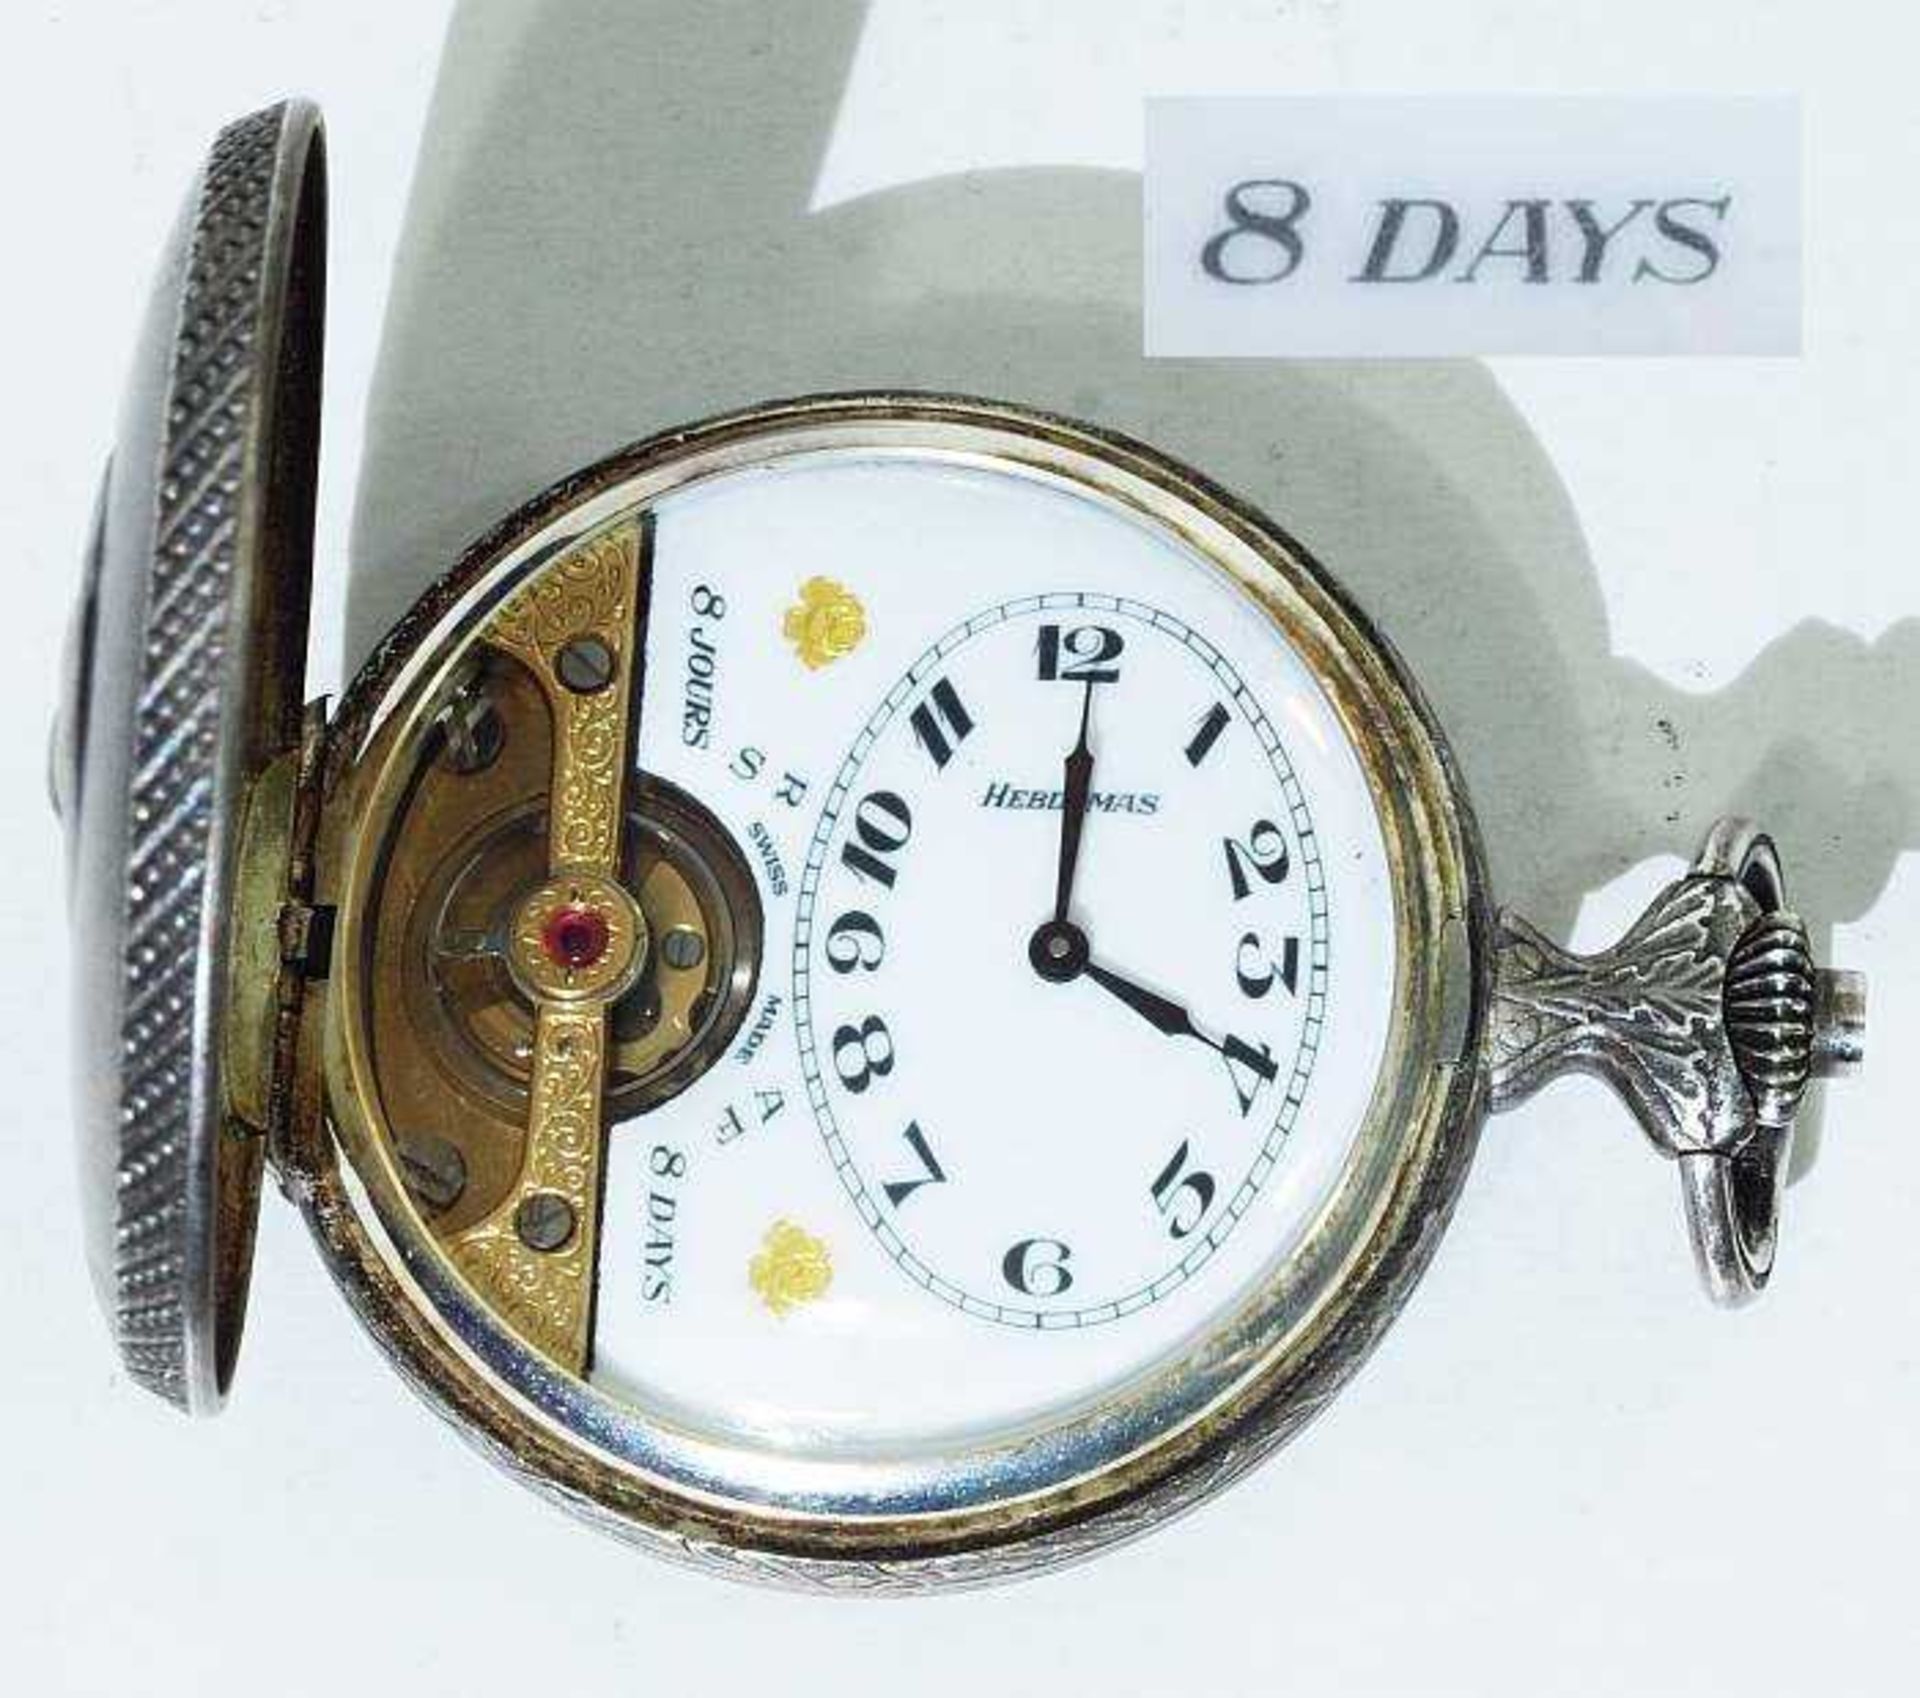 HEBDOMAS Sprungdeckel-Taschenuhr. HEBDOMAS Sprungdeckel-Taschenuhr, mit 8-Tage-Uhrwerk, Swiss